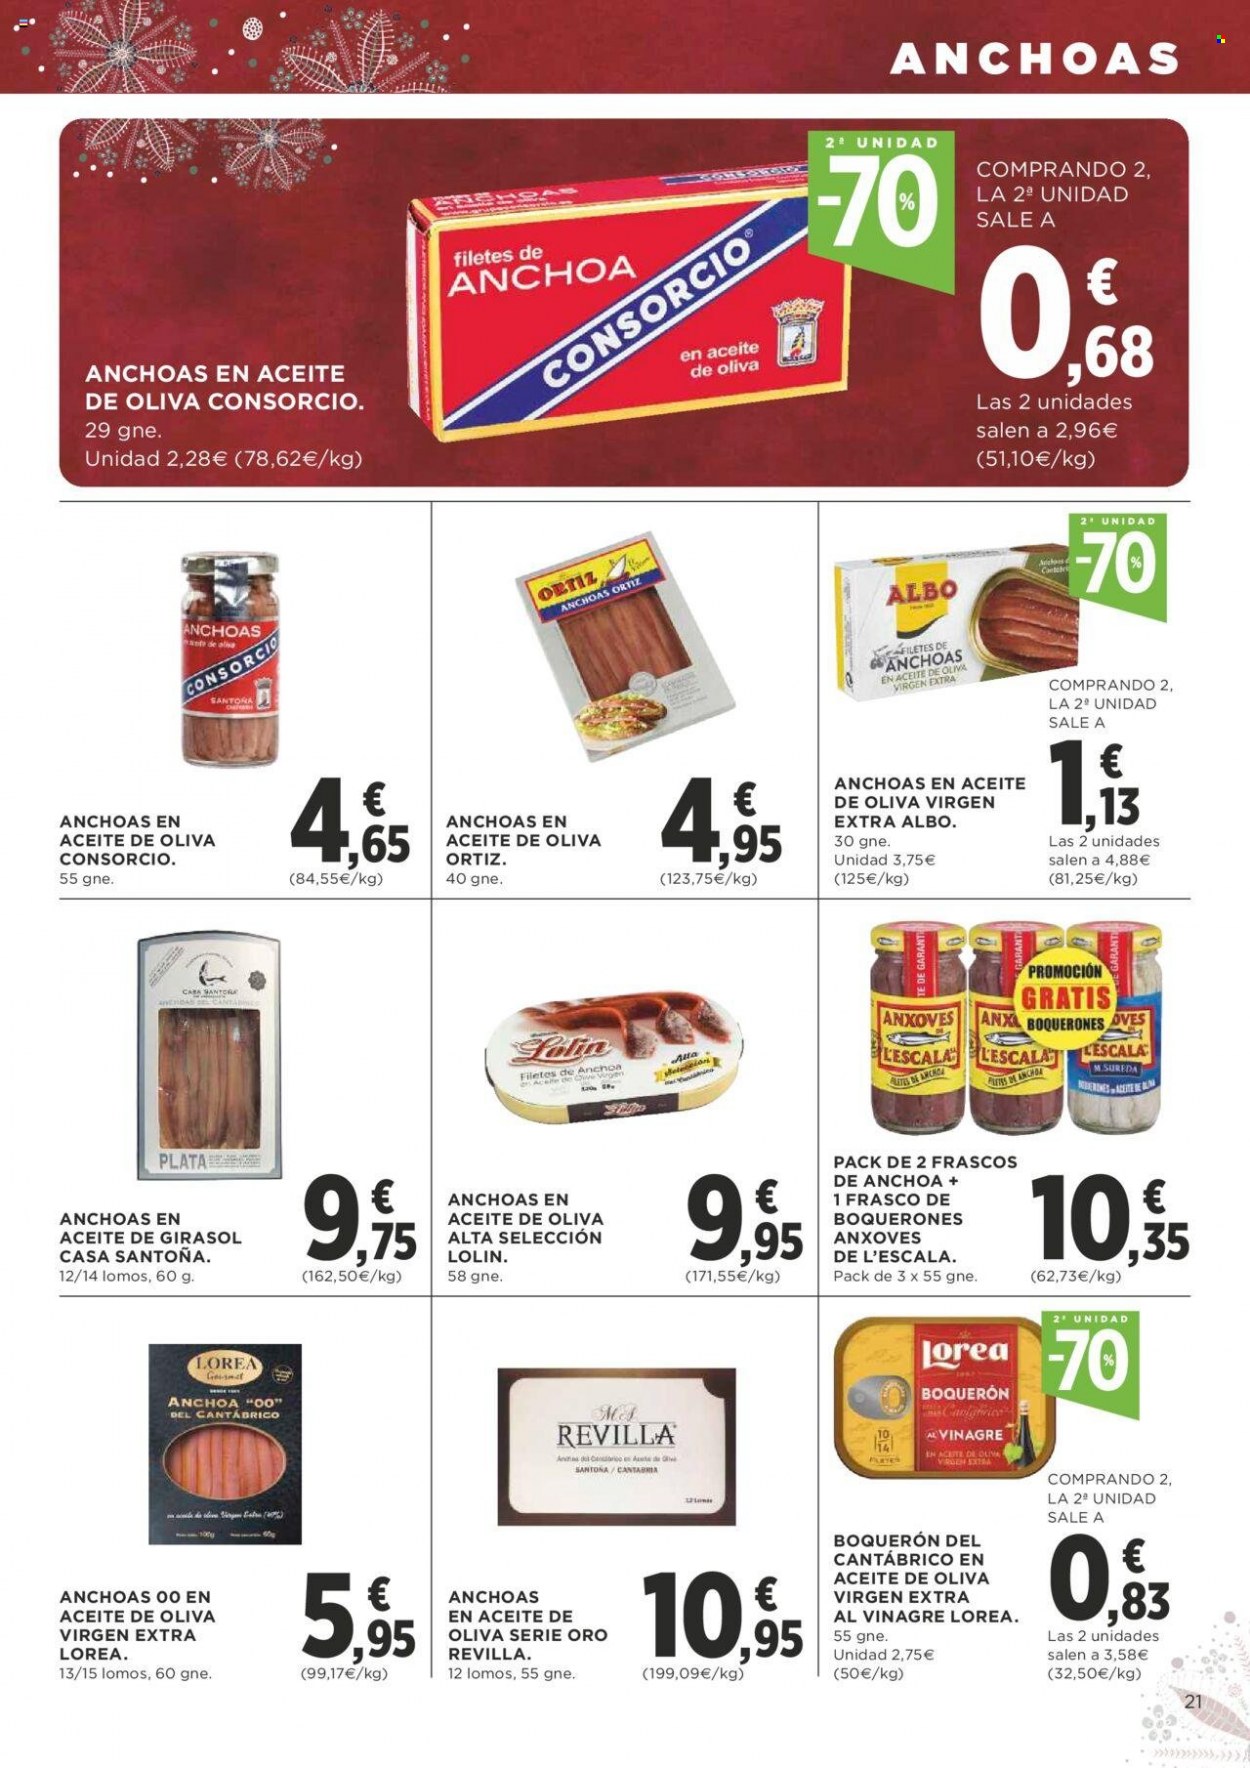 thumbnail - Folleto actual Supercor supermercados - 18/11/21 - 01/12/21 - Ventas - anchoa, boquerón, vinagre. Página 21.